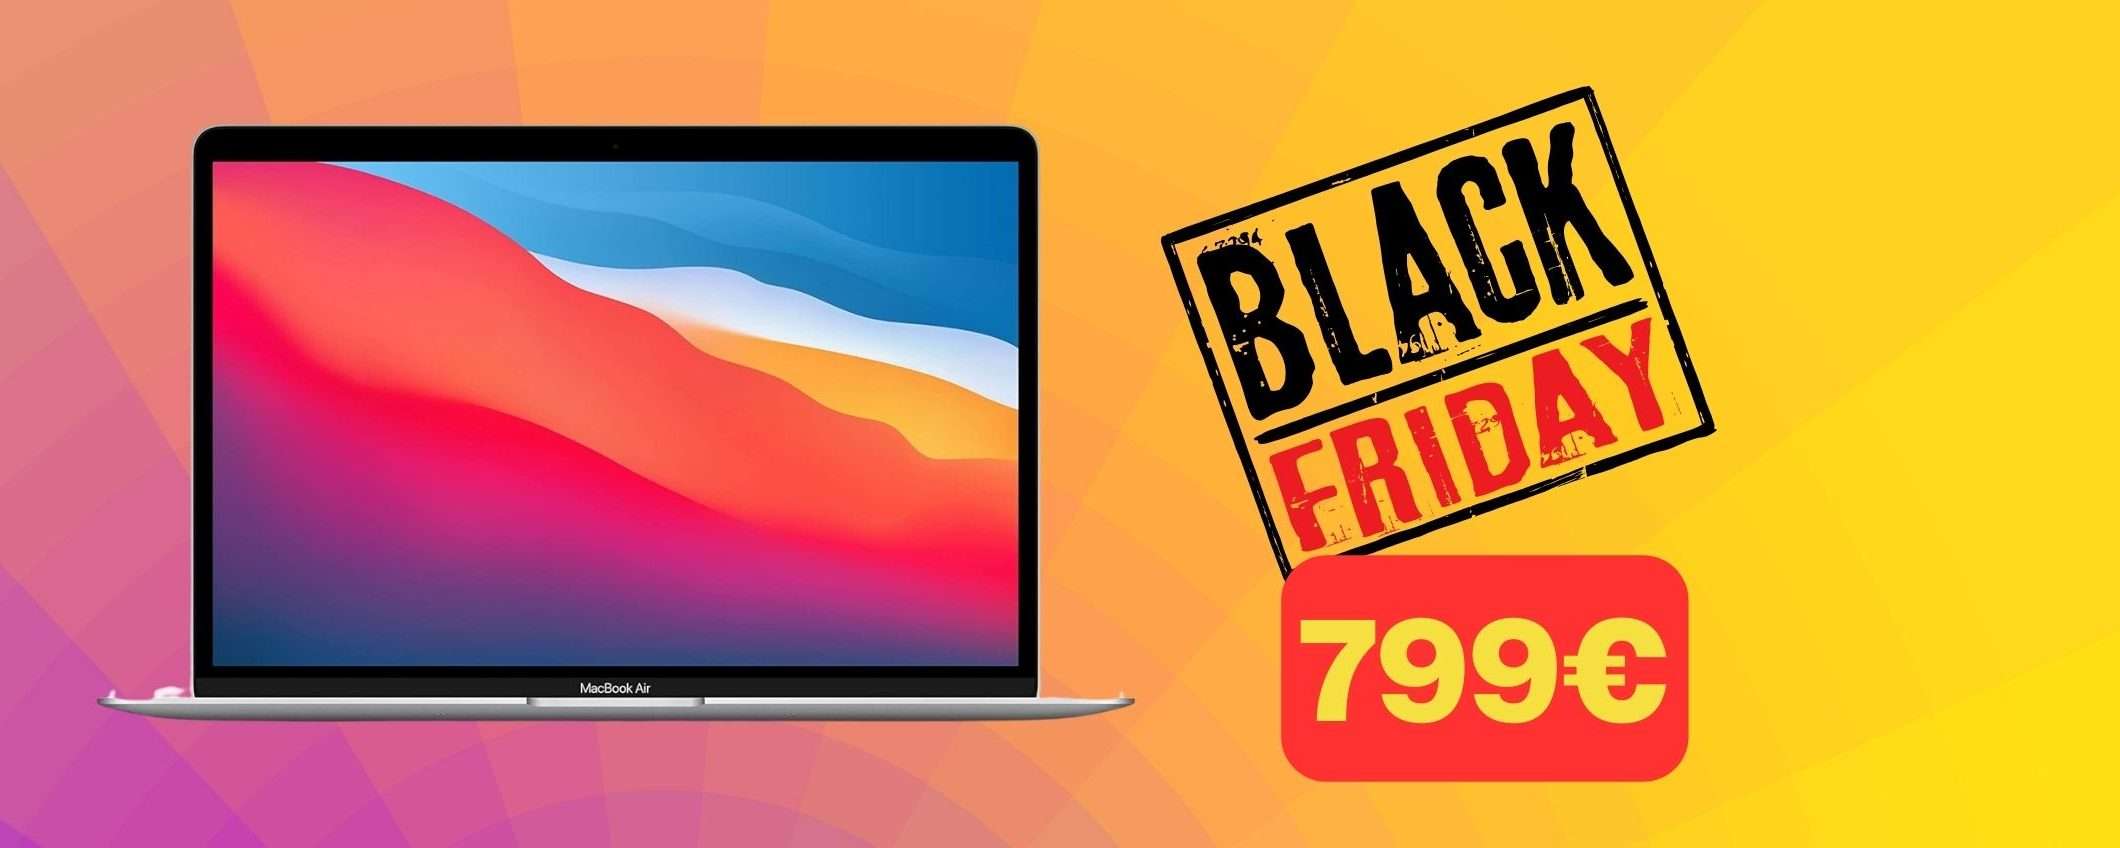 MacBook Air M1: ritorno a 799€ per il Black Friday su Amazon